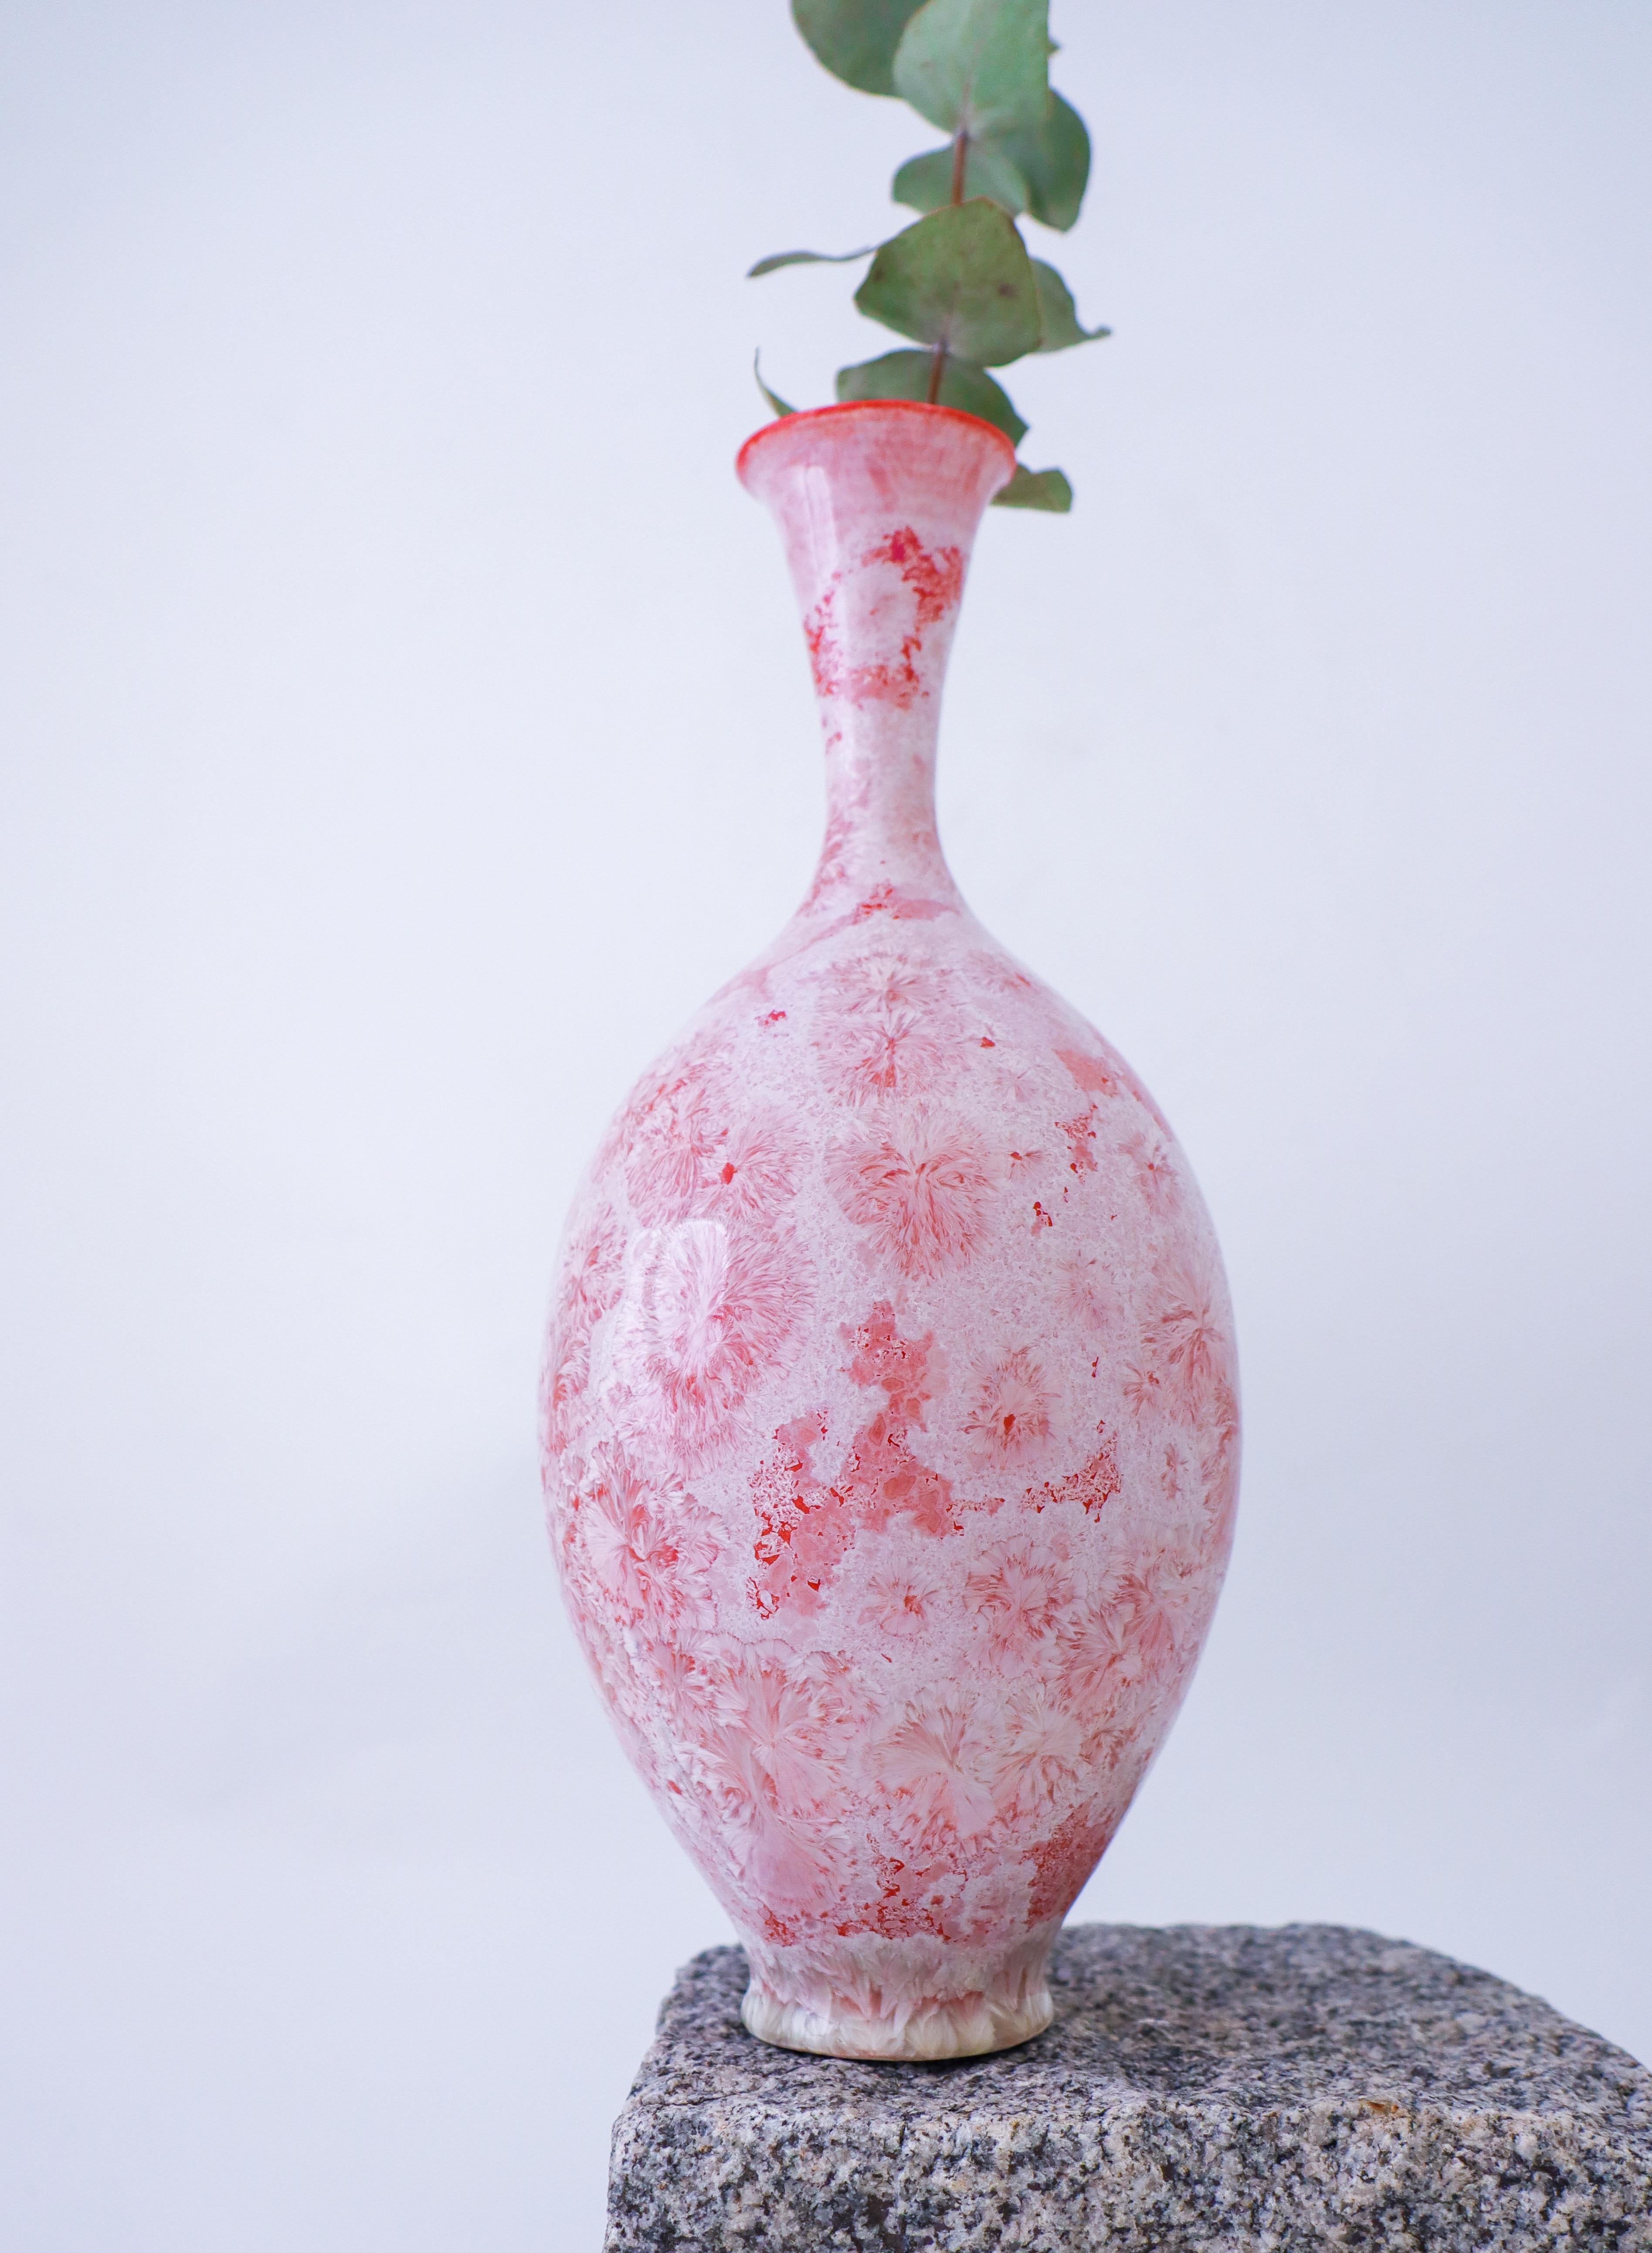 Un vase rouge et blanc avec une glaçure cristalline conçu par Isak Isaksson en Suède. Le vase mesure 30 cm de haut et environ 12 cm de diamètre. Il est en excellent état. Il s'agit d'un vase unique, tourné à la main par Isak Isaksson. Il est signé